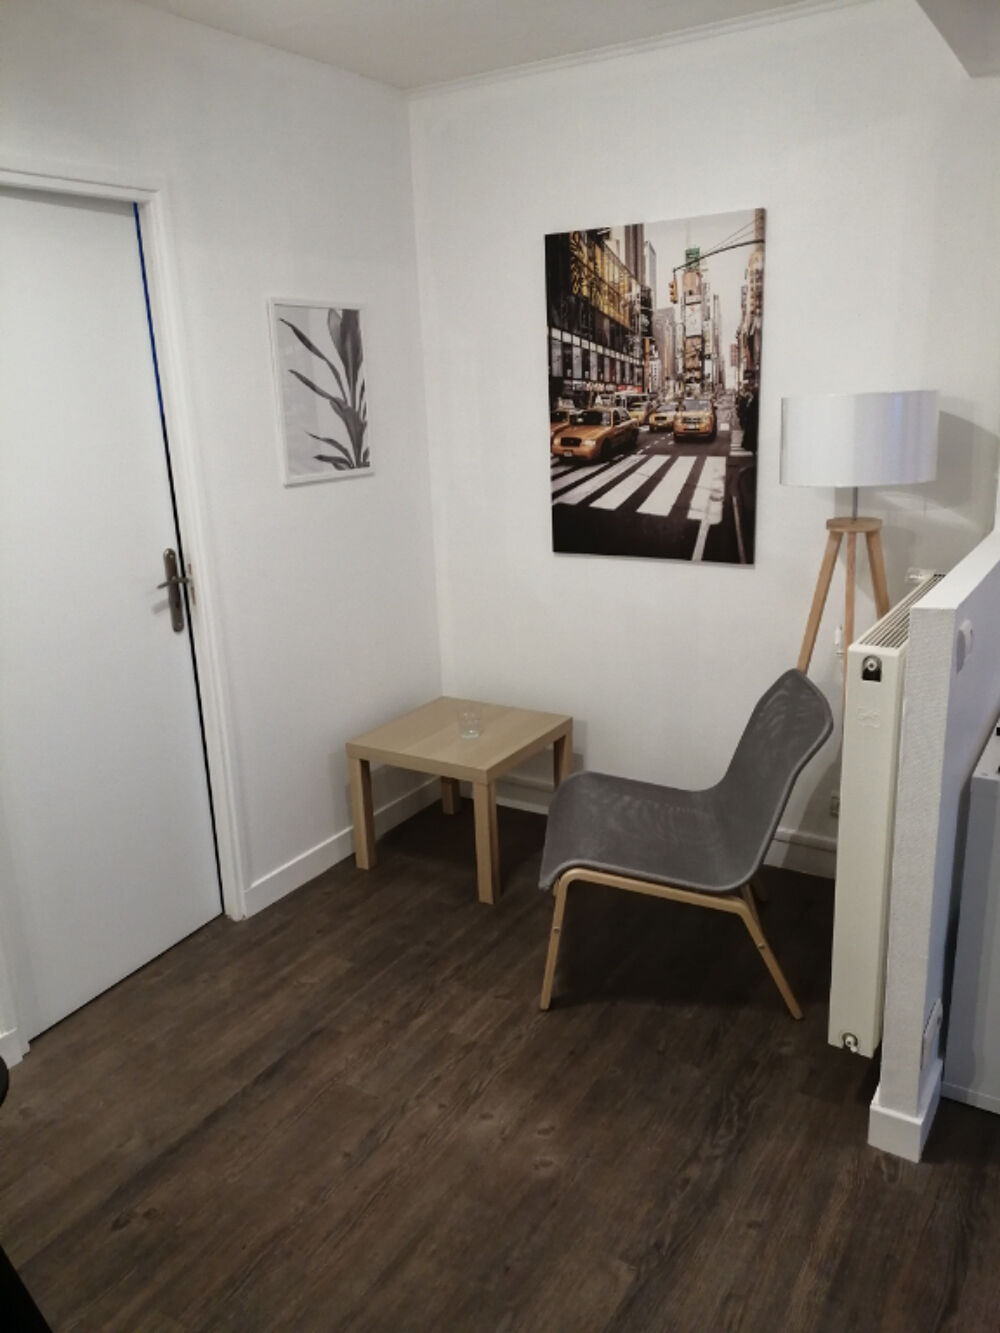 Location Appartement A louer - Chambre meuble en colocation - Quartier Kergoat / Bellevue  BREST Brest